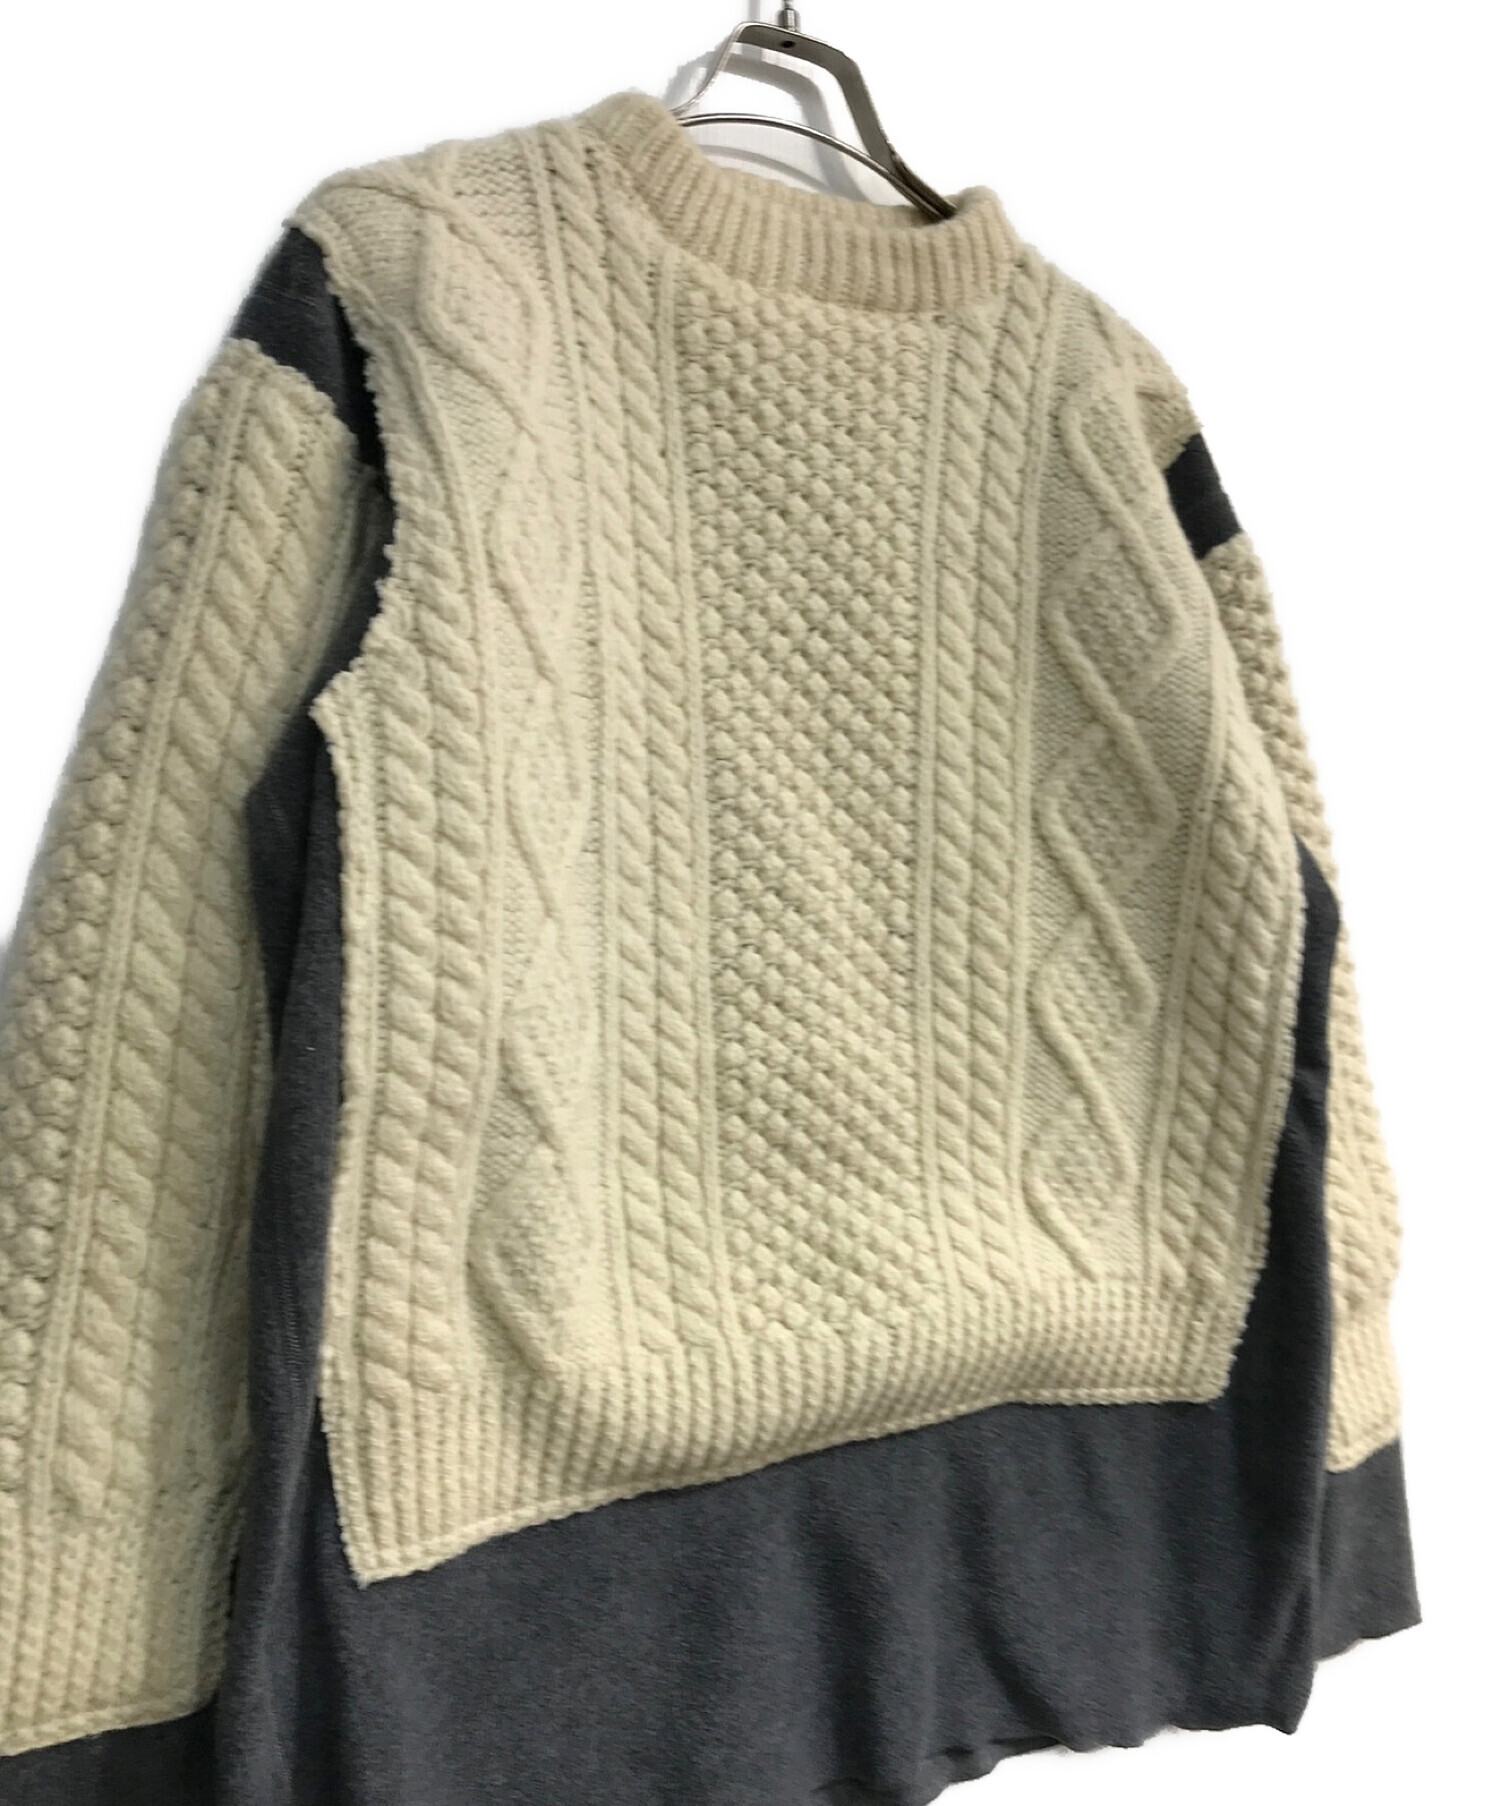 Rebuild by Needles (リビルドバイニードルス) fisherman sweater　フィッシャーマン　セーター ホワイト×グレー  サイズ:S 未使用品